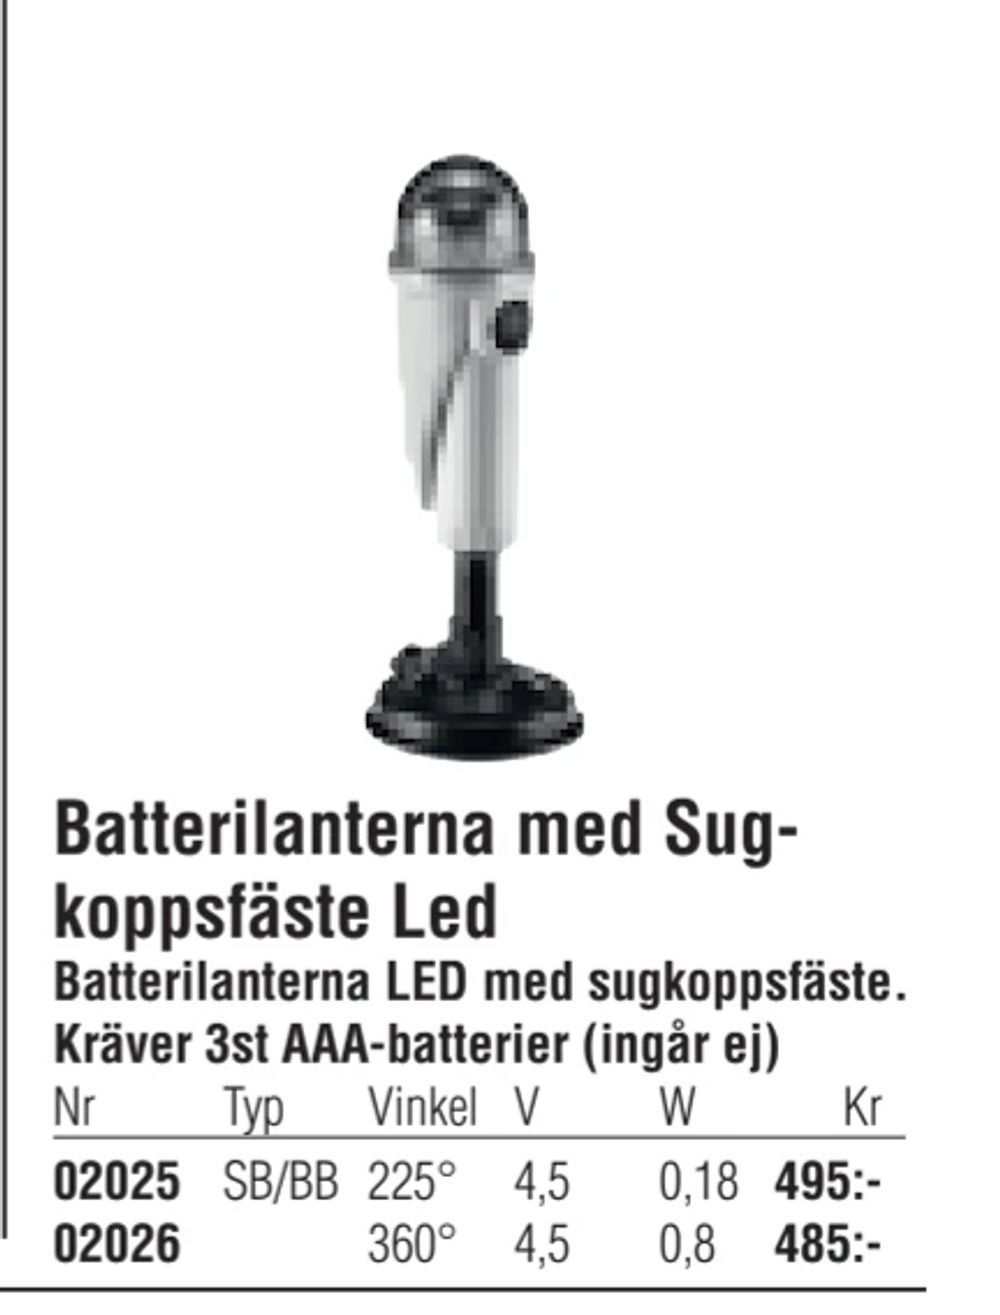 Erbjudanden på Batterilanterna med Sugkoppsfäste Led från Erlandsons Brygga för 485 kr